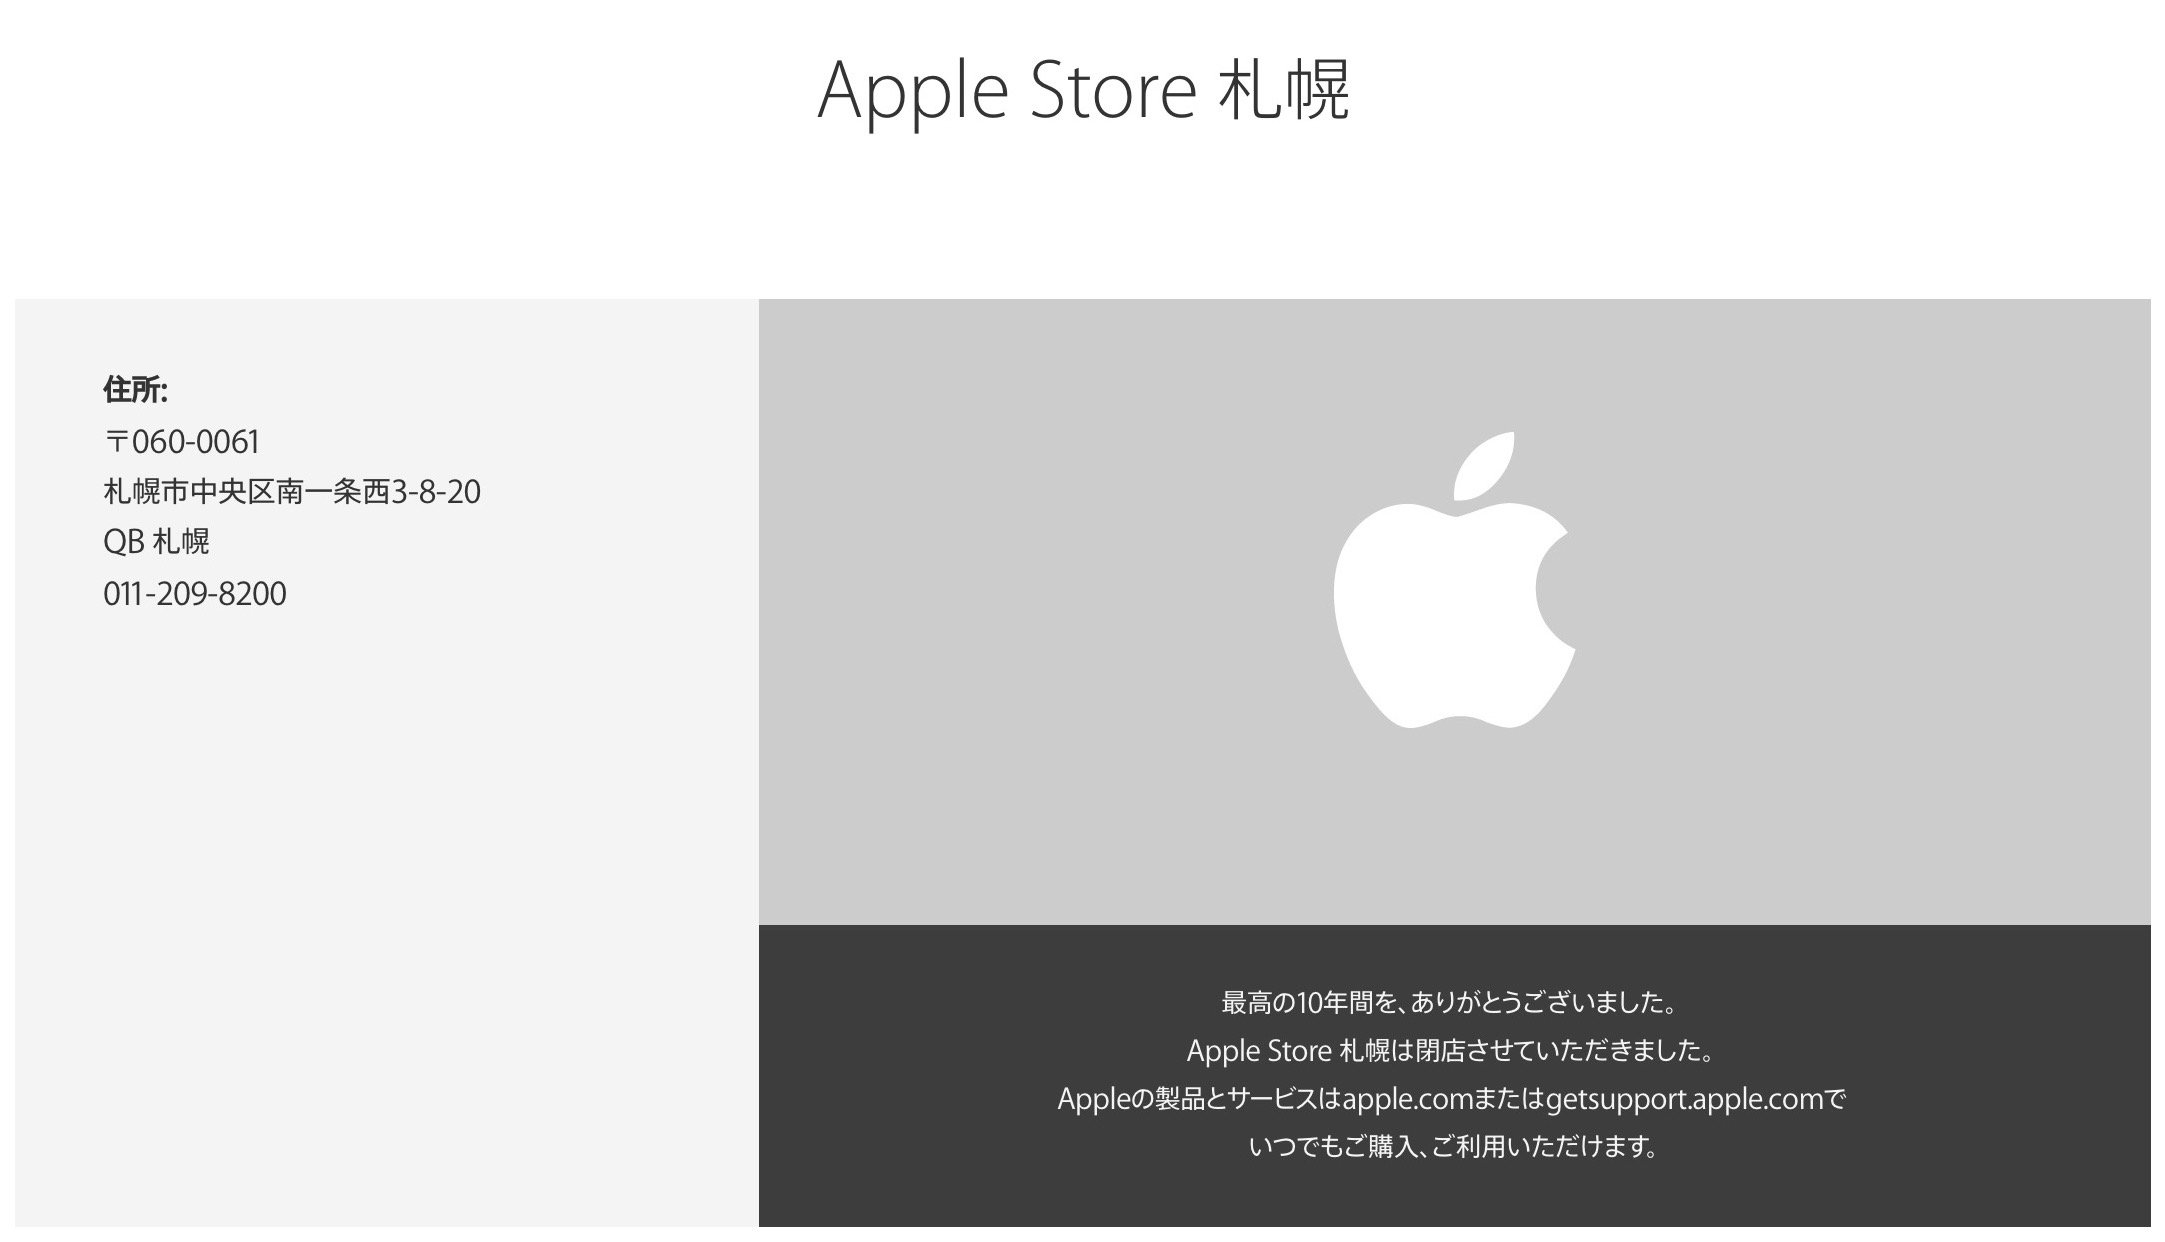 Apple Store札幌が「閉店」、公式サイトの案内も移転から「閉店」に